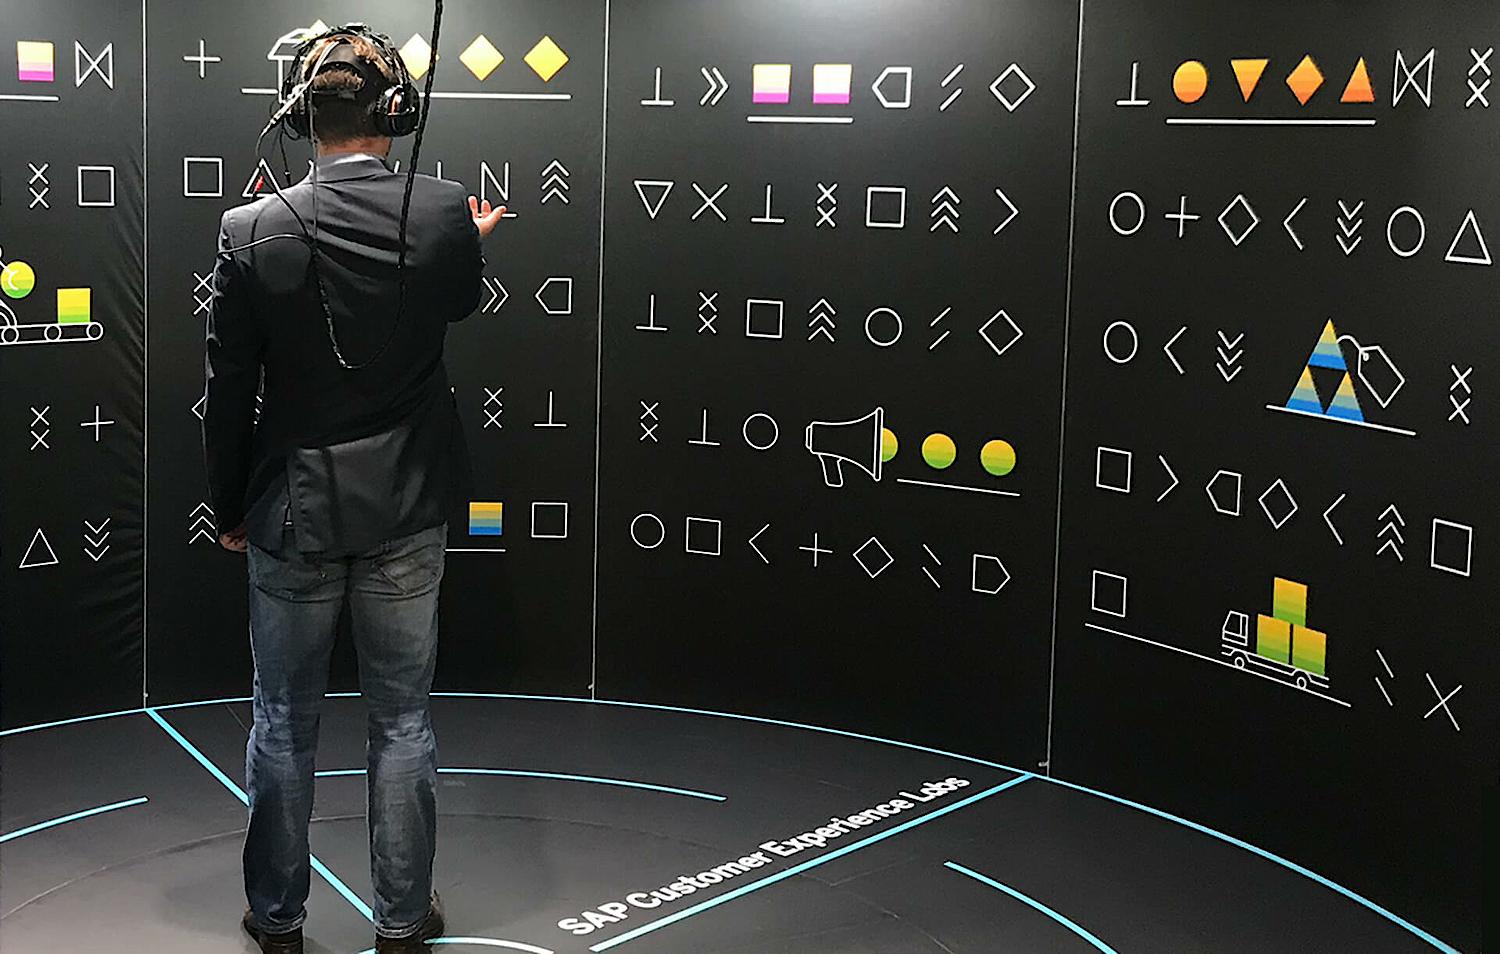 SAP VR Galaxy Showcase Image | schoene neue kinder